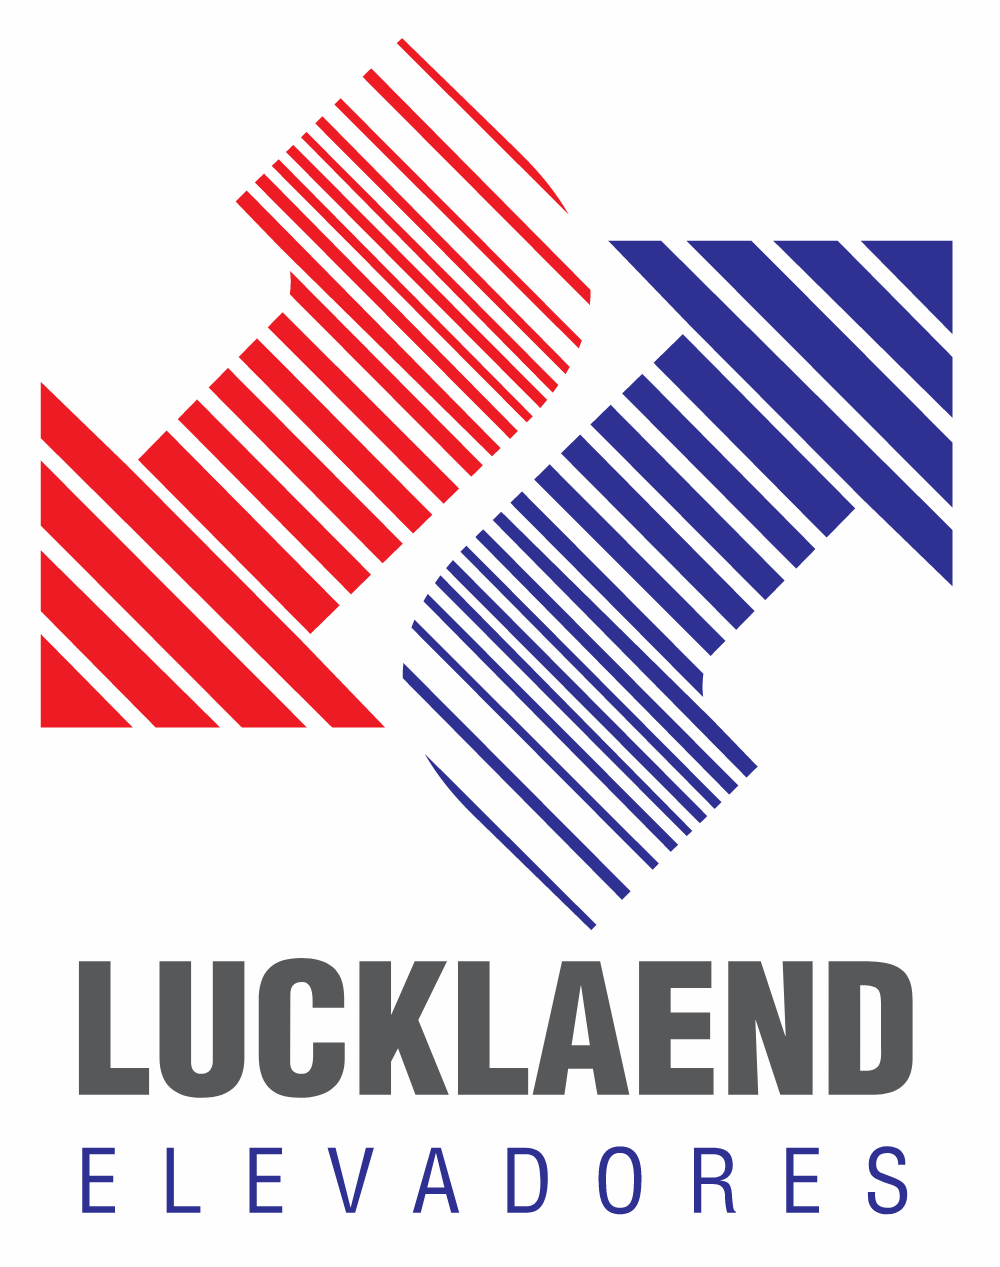 Lucklaend Elevadores Logo Logos